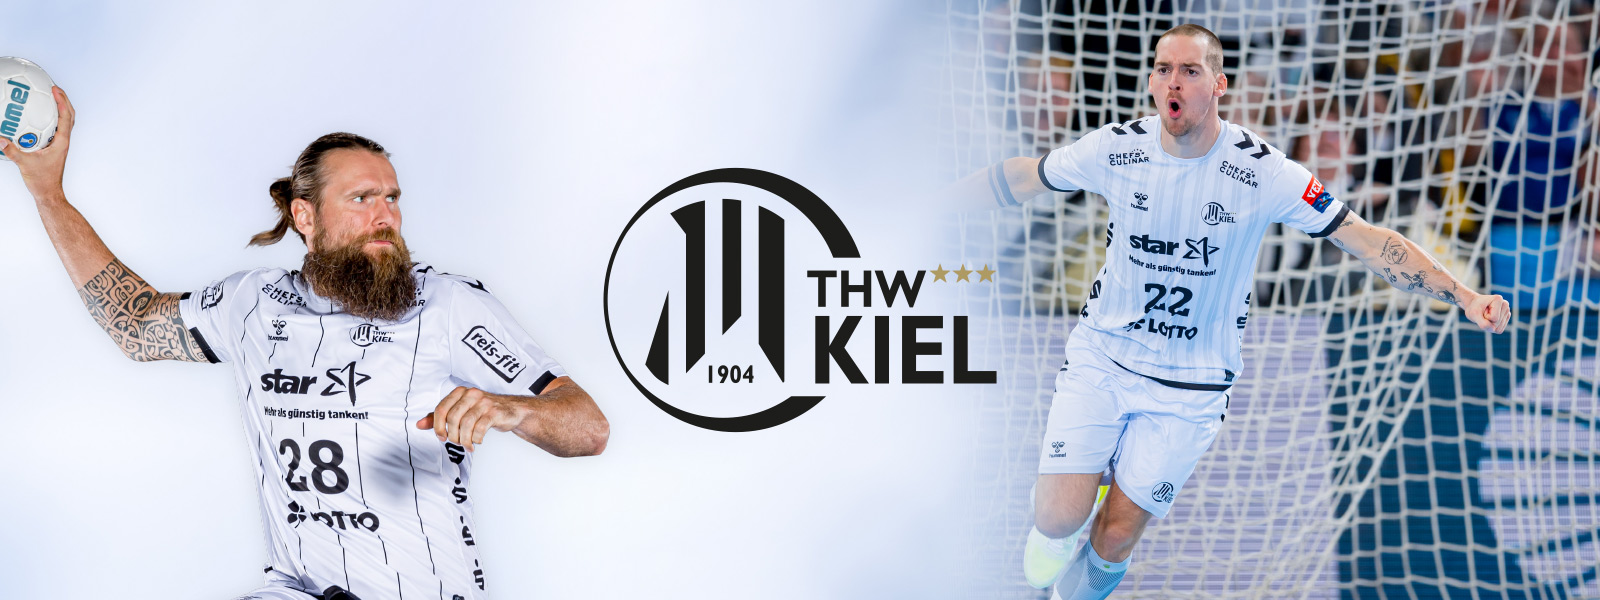 Twee -verdeelde foto van THW Kiel Handballer met een baard bij de worp aan de linkerkant en andere spelers op het veld op het veld aan de rechterkant, tussen het logo van de club daartussenin